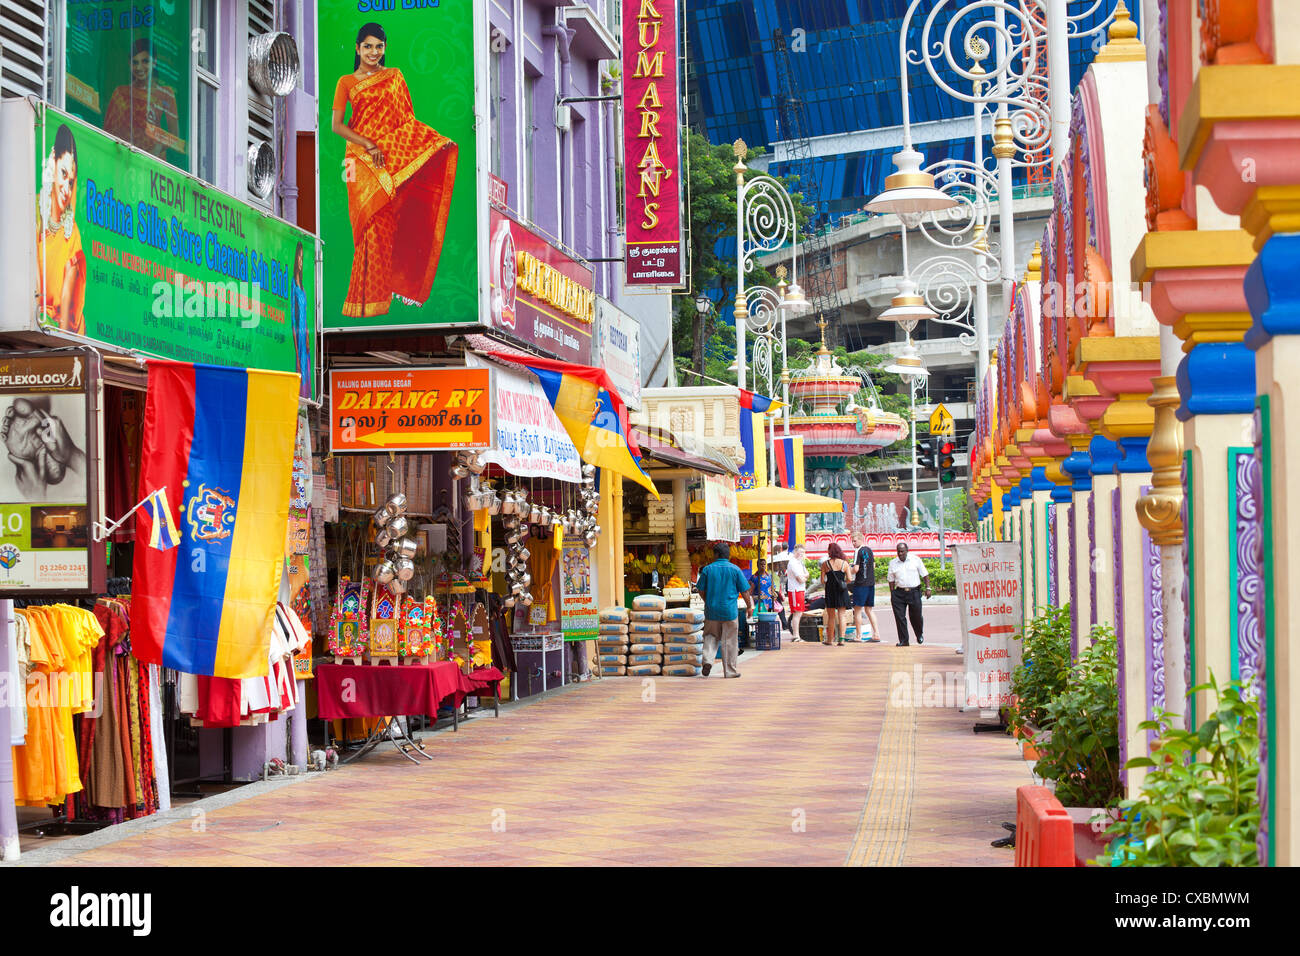 Jalan Tun Sambantham, Little India, Kuala Lumpur, Malaysia, Southeast Asia, Asia Stock Photo